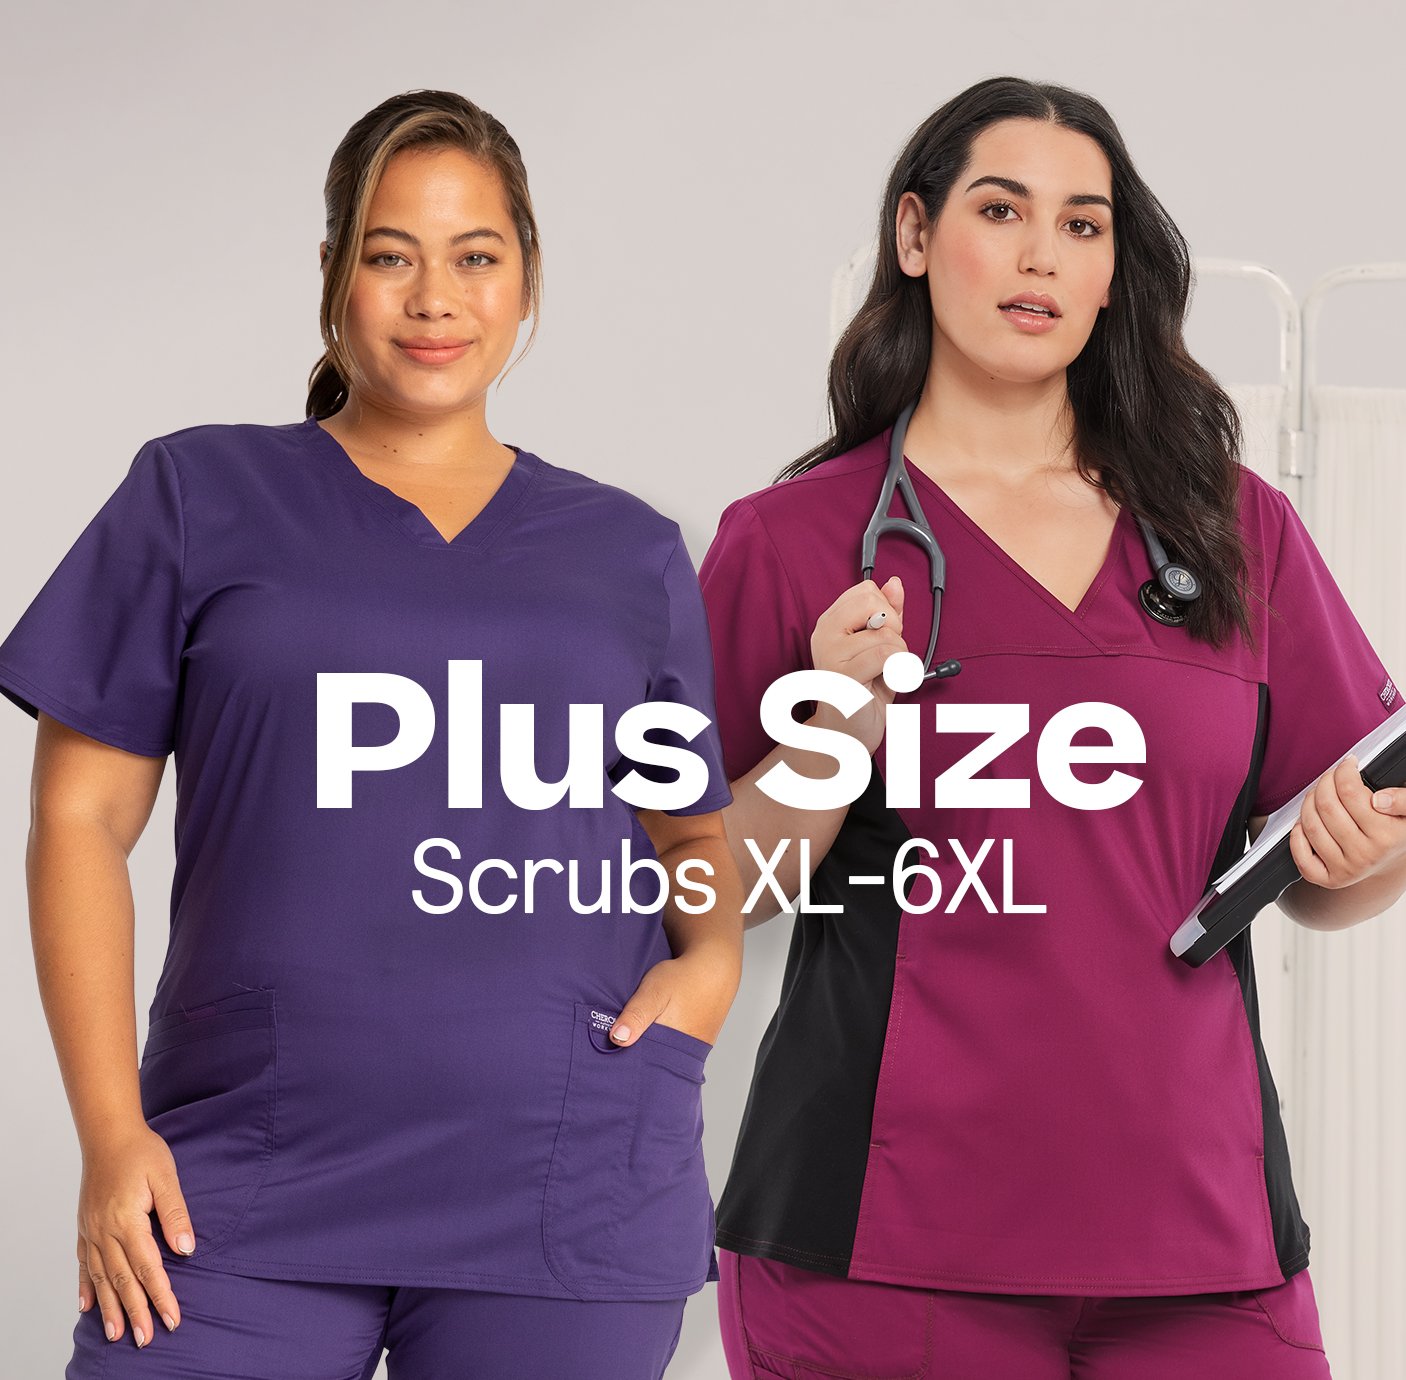 Scrubs for every body: XXS to 5XL